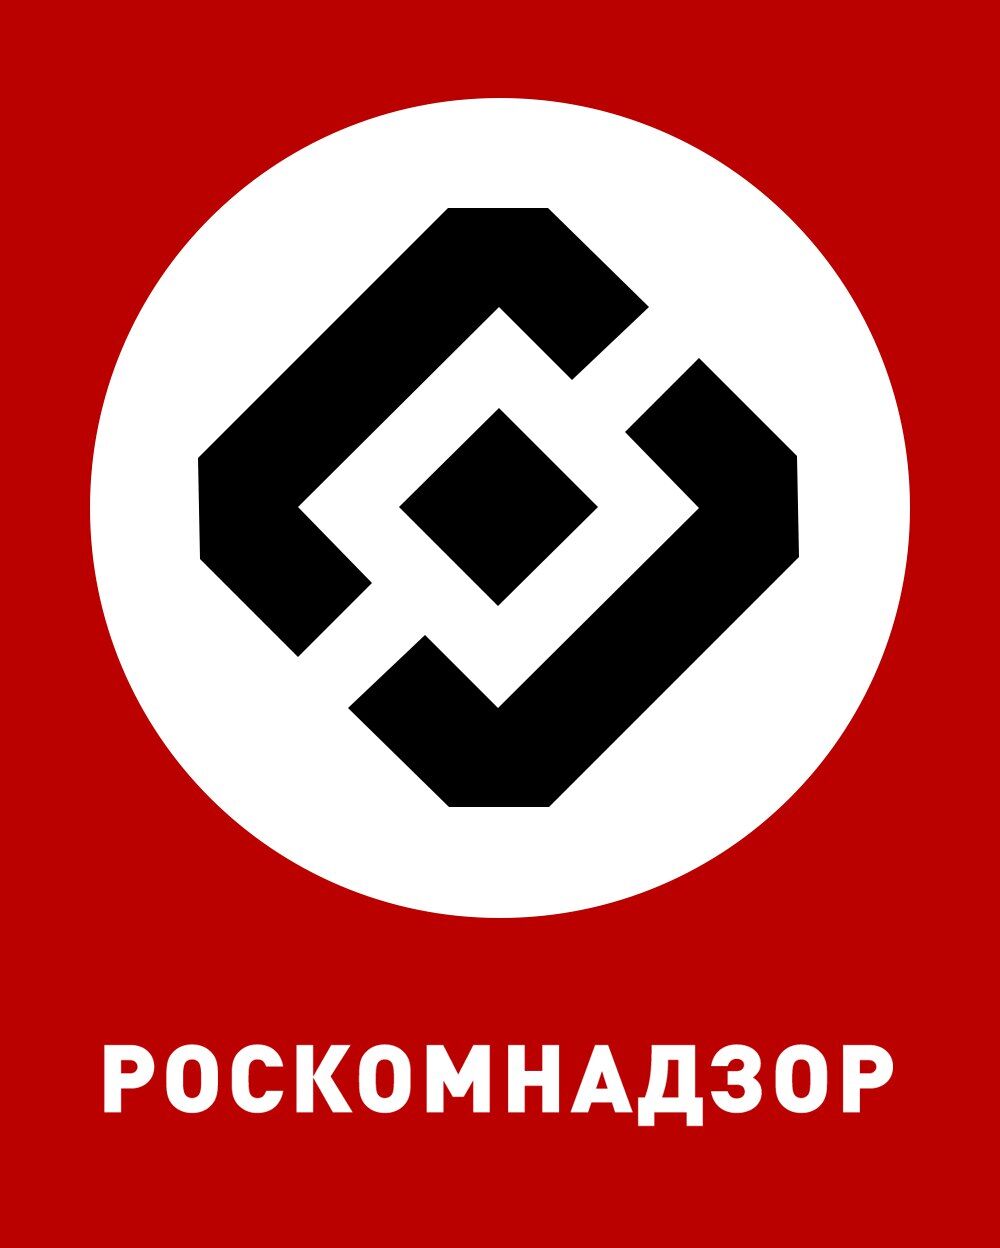 Как нацисты: Дуров высмеял Роскомнадзор